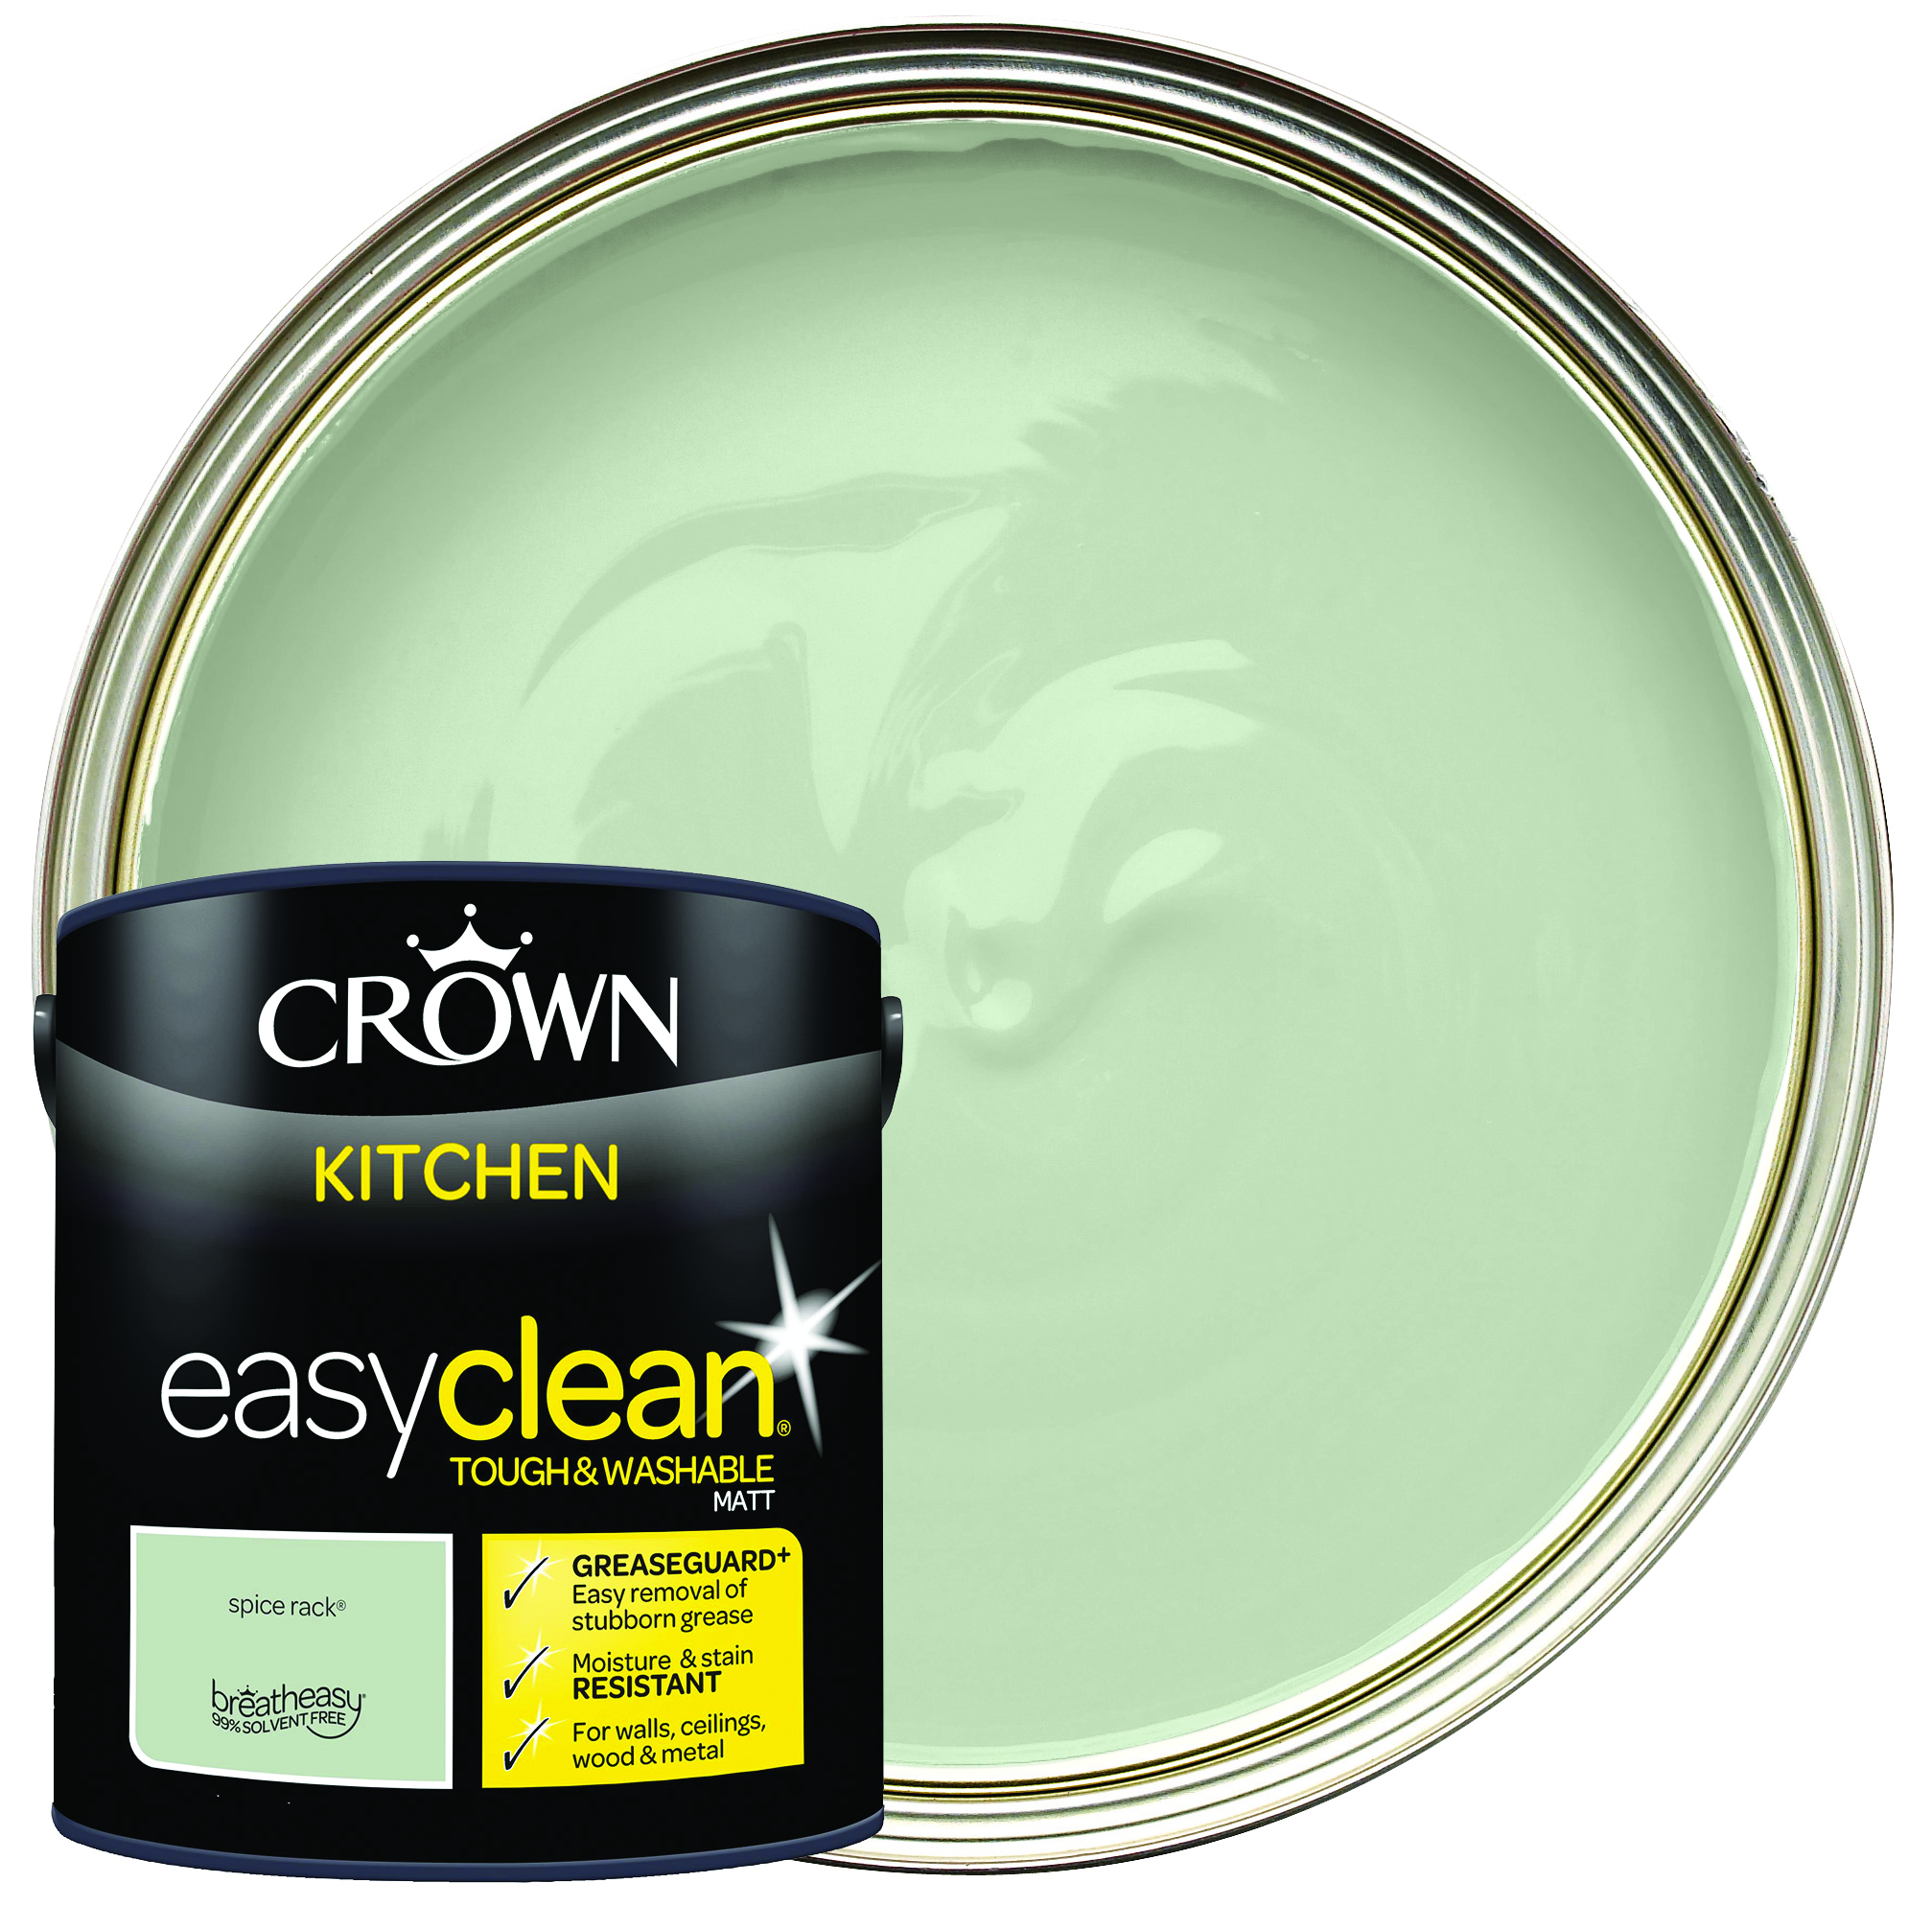 Crown Easyclean Matt Emulsion Kitchen Paint - Spice Rack - 2.5L